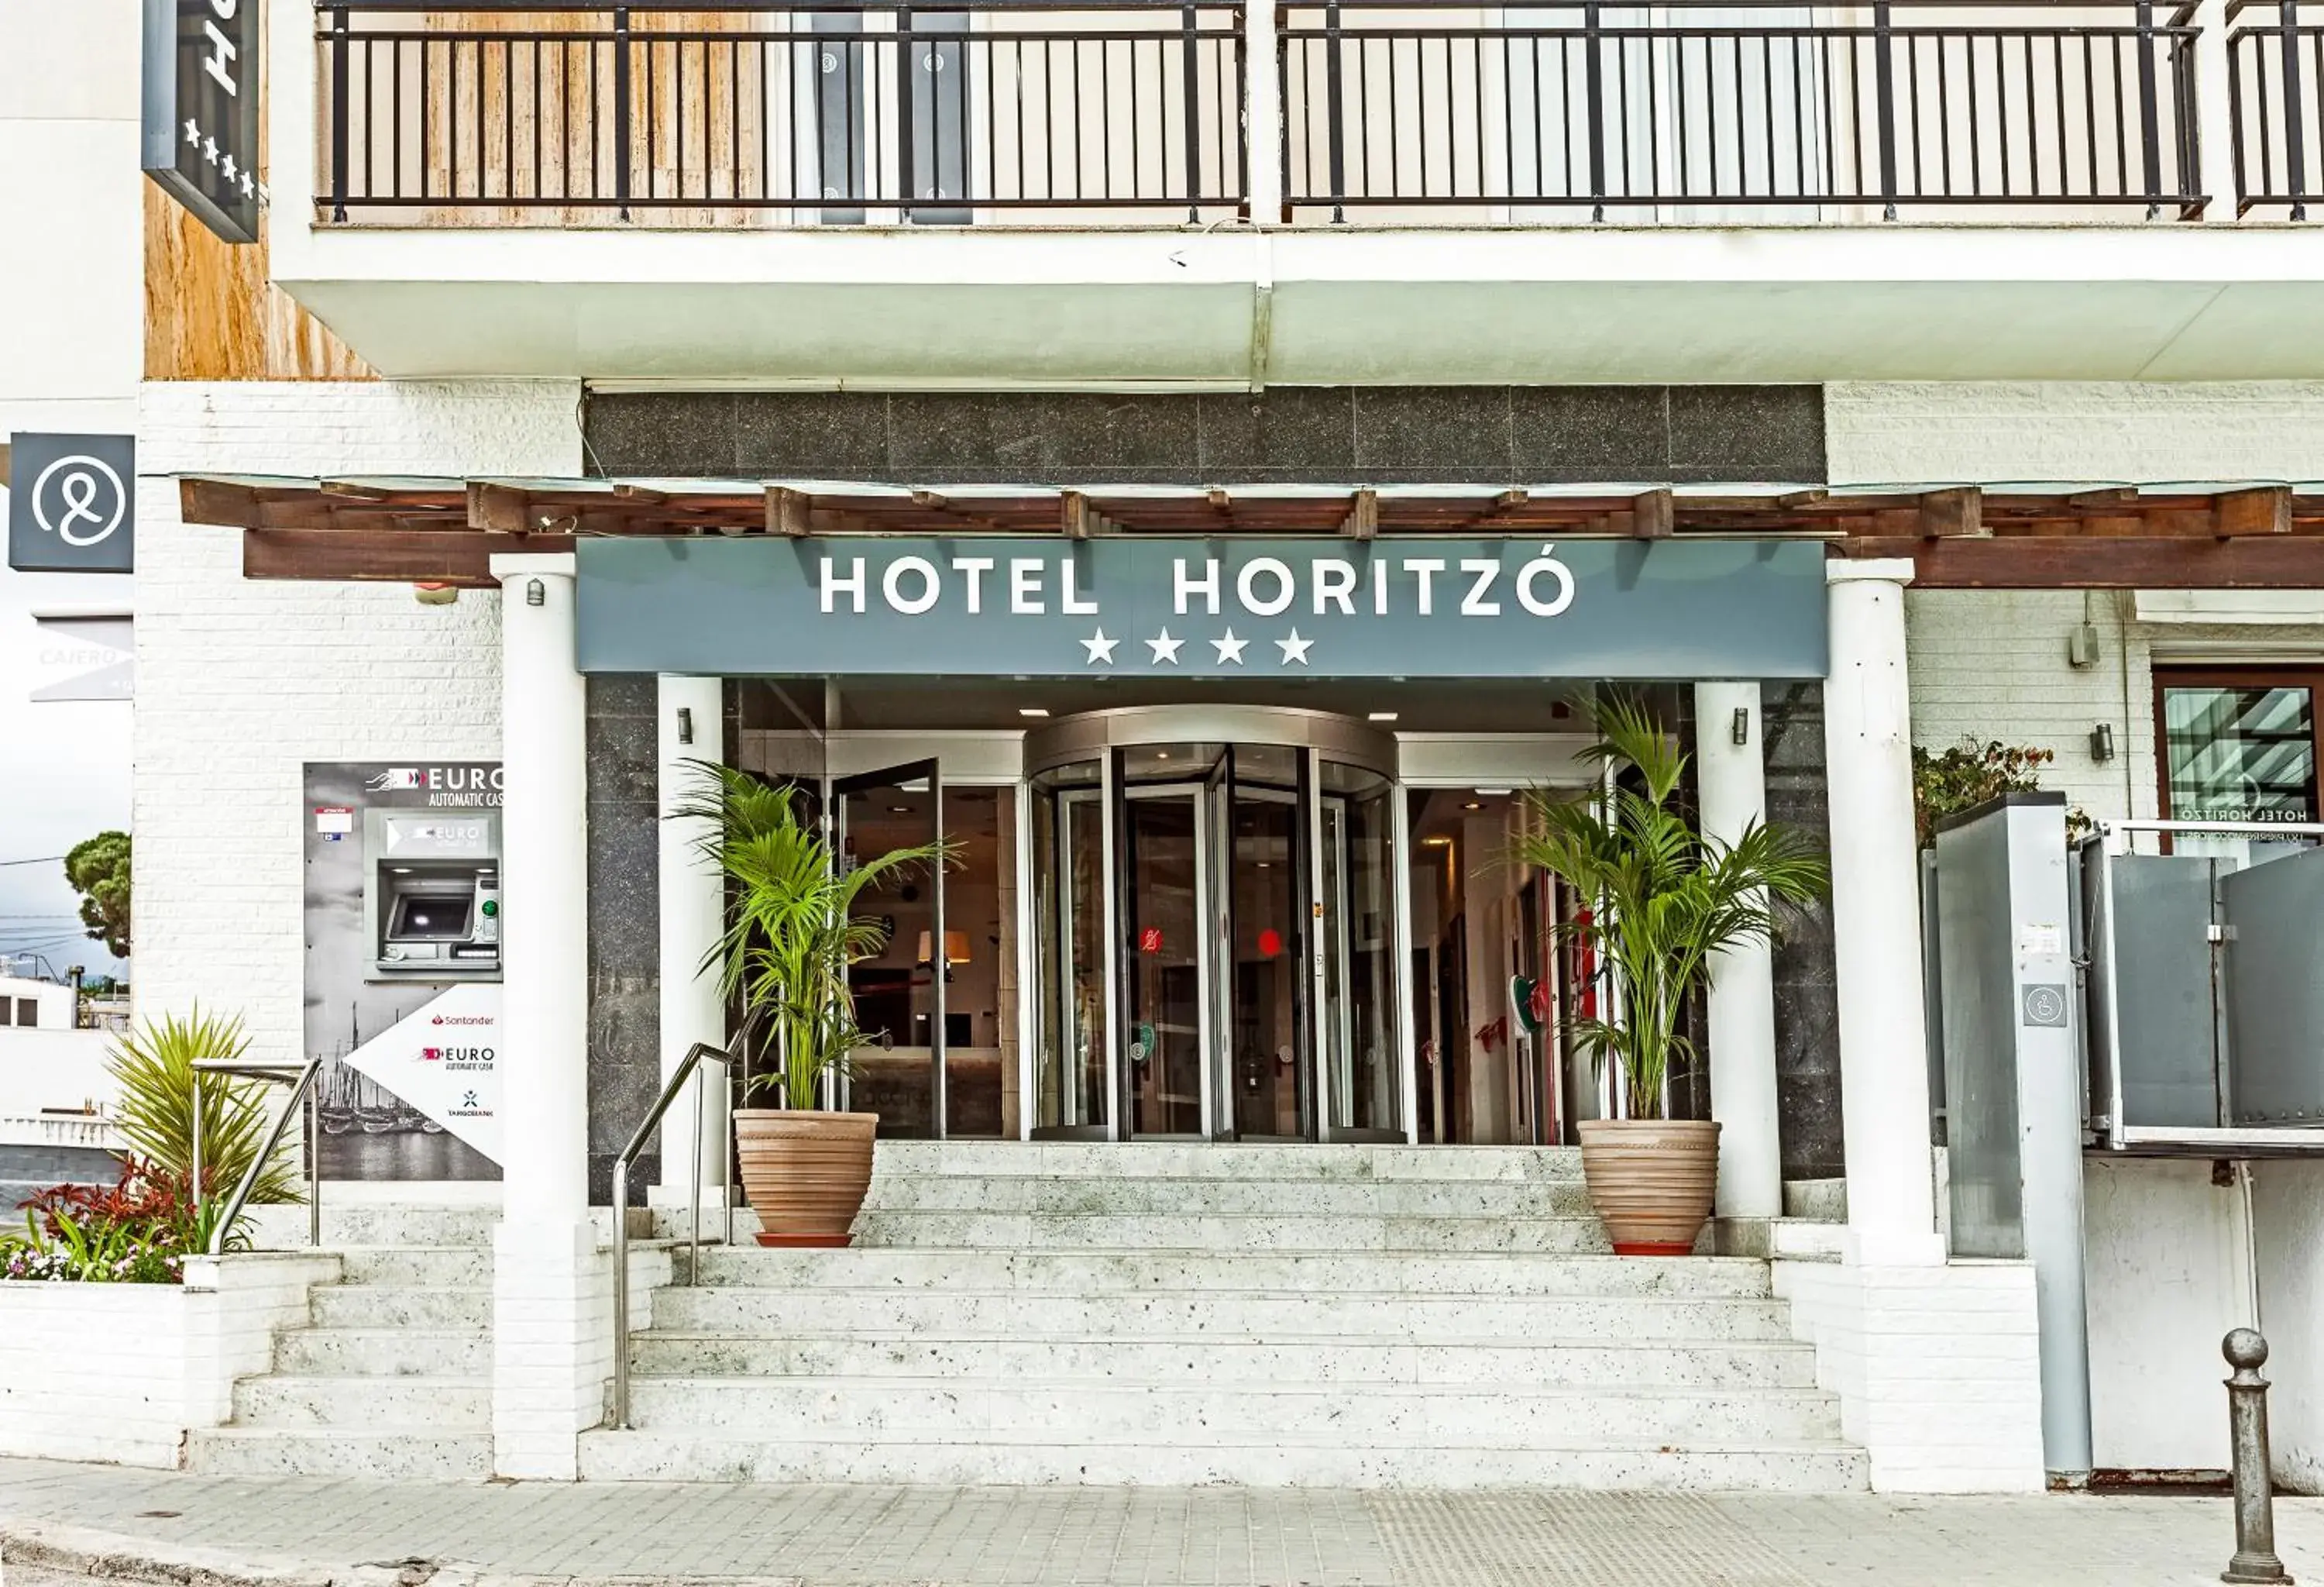 Facade/entrance in Hotel Horitzo by Pierre & Vacances